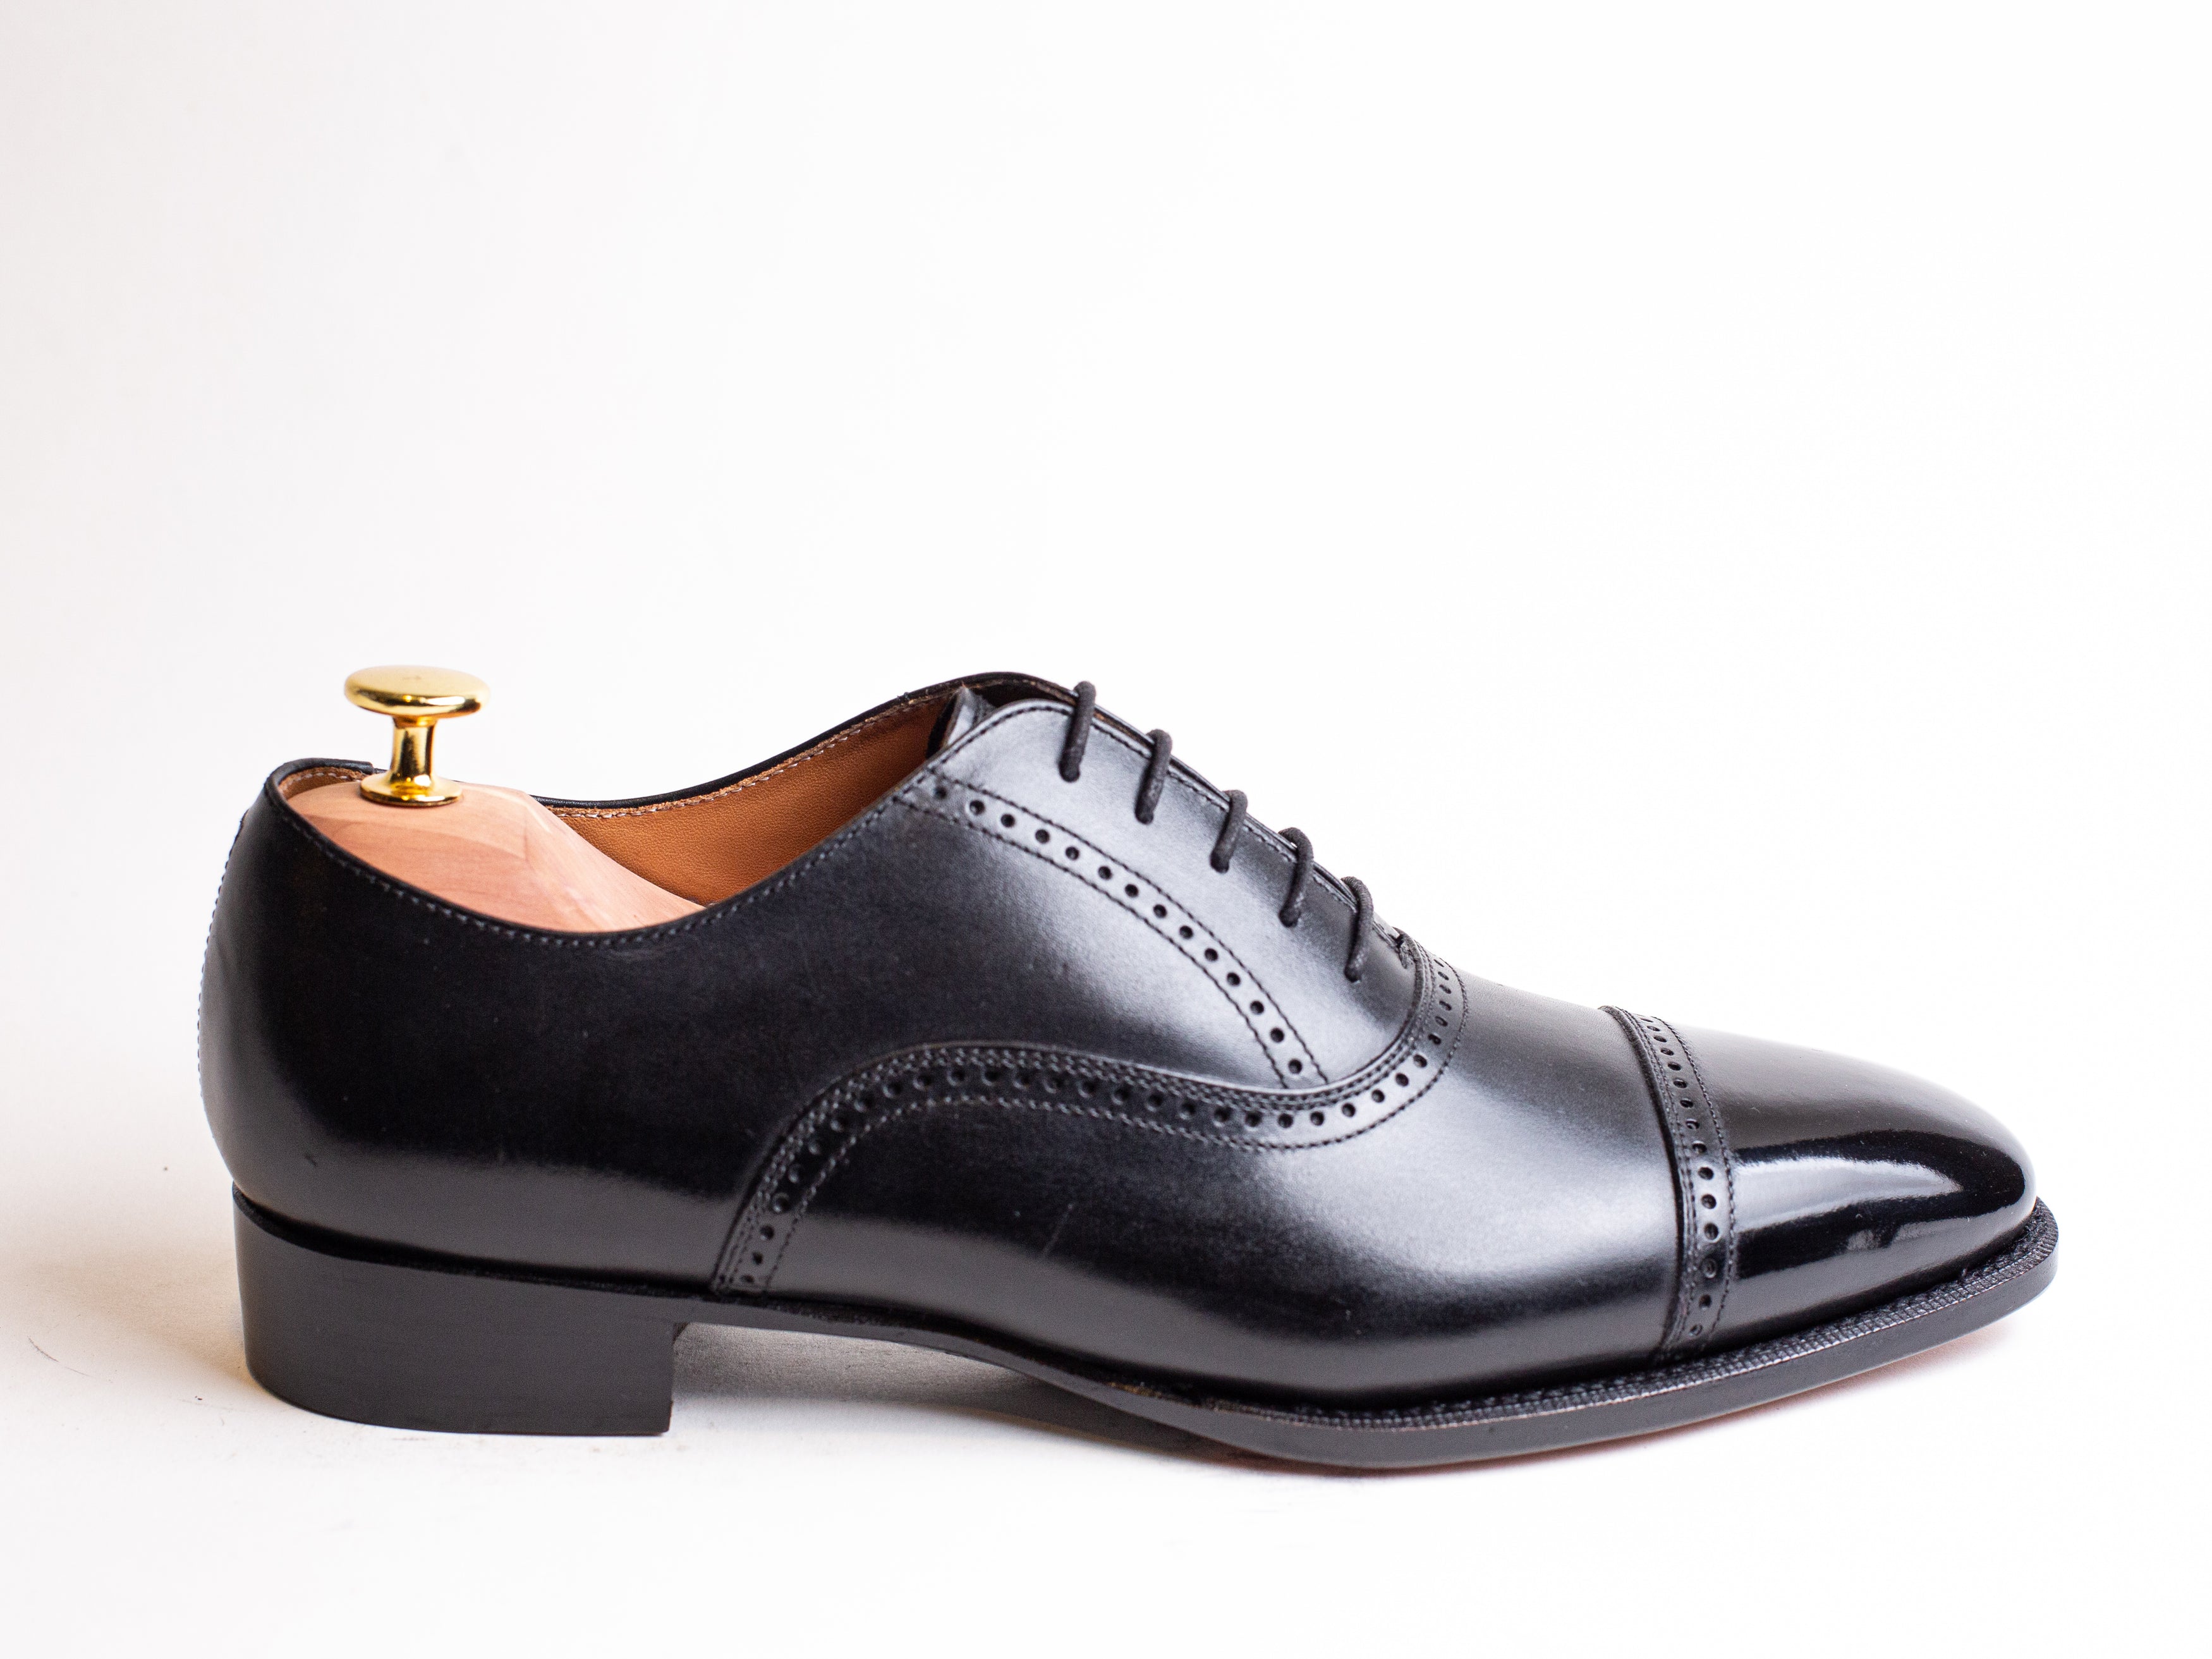 Shoes - CNES Shoemaker